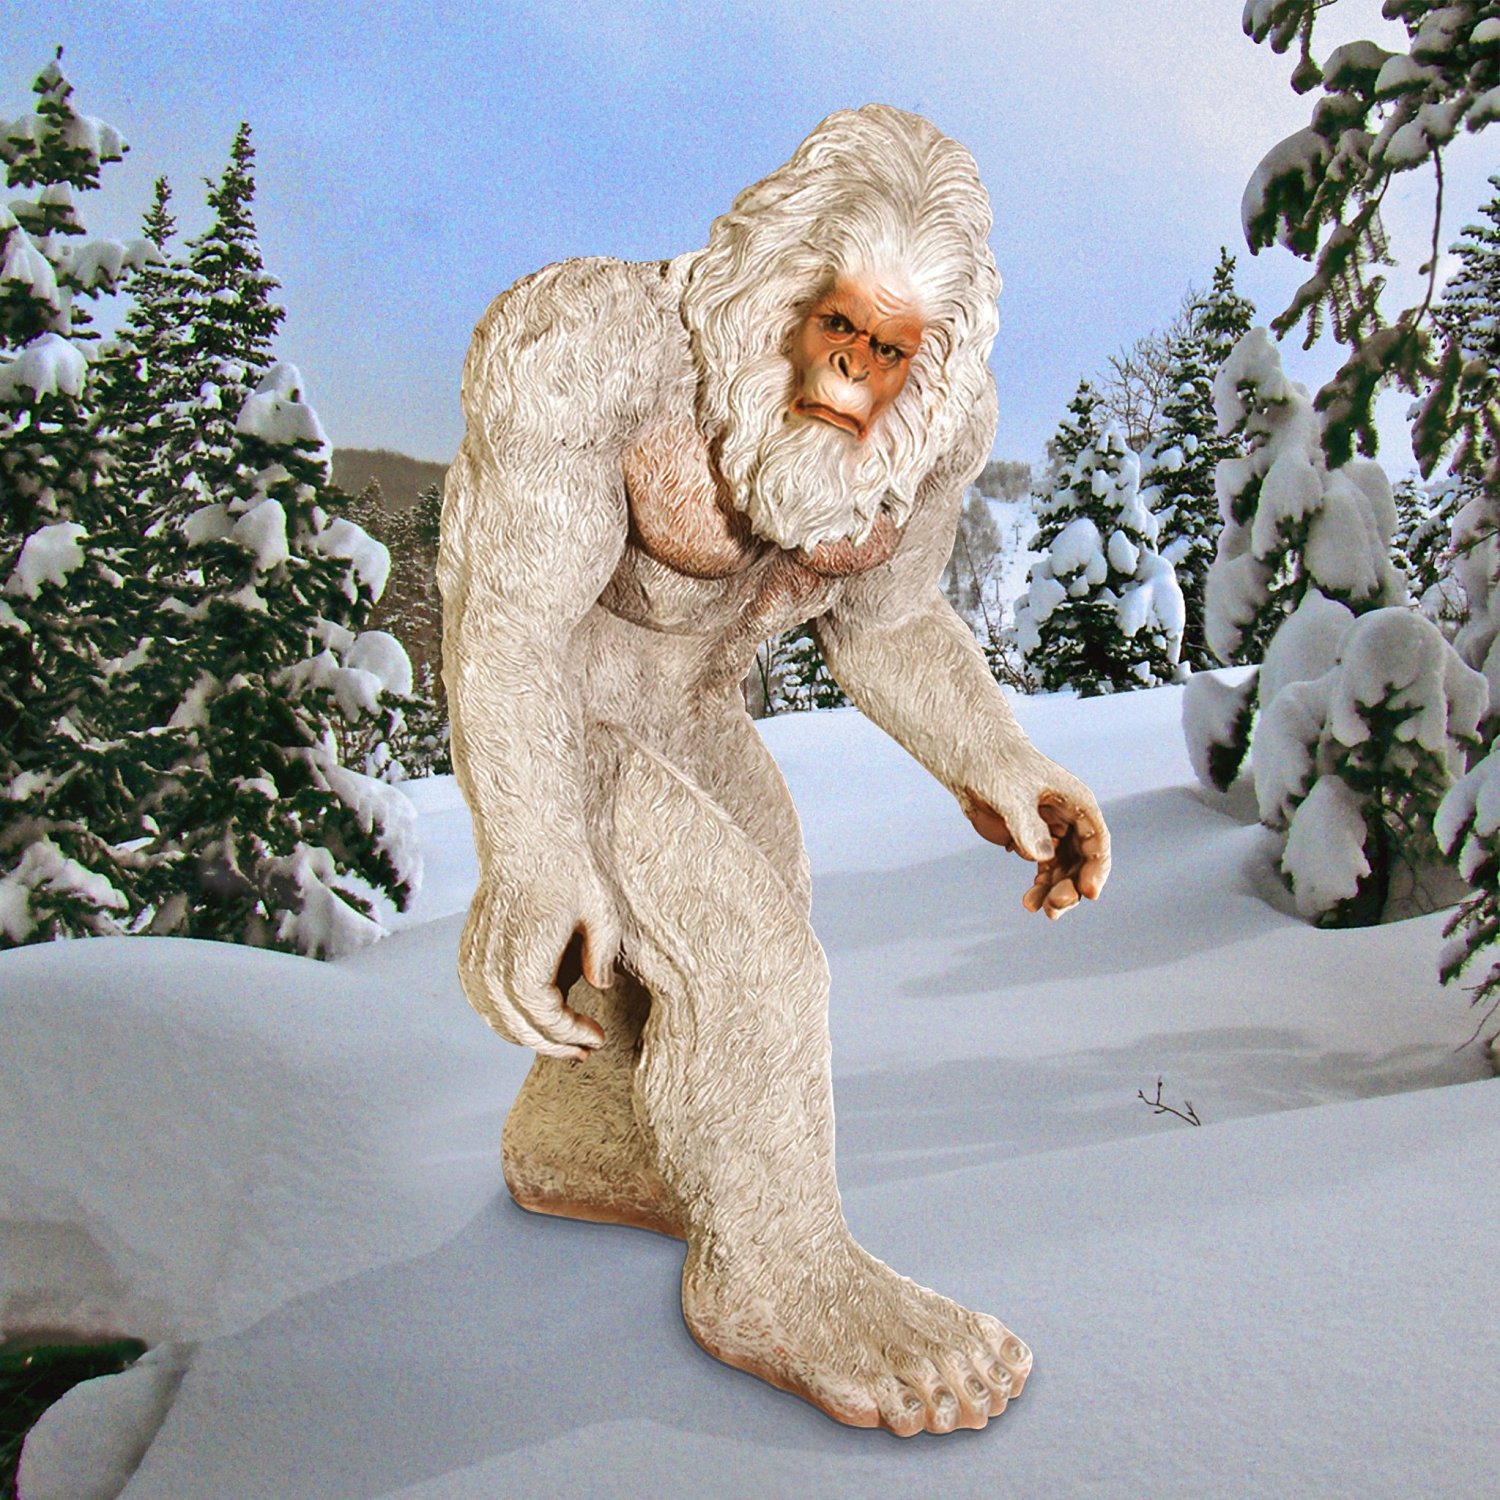 Что делает снежный человек. Йети снежный. Yeti снежный человек. Йети Алтайский. Йети бигфут сасквоч Леший.